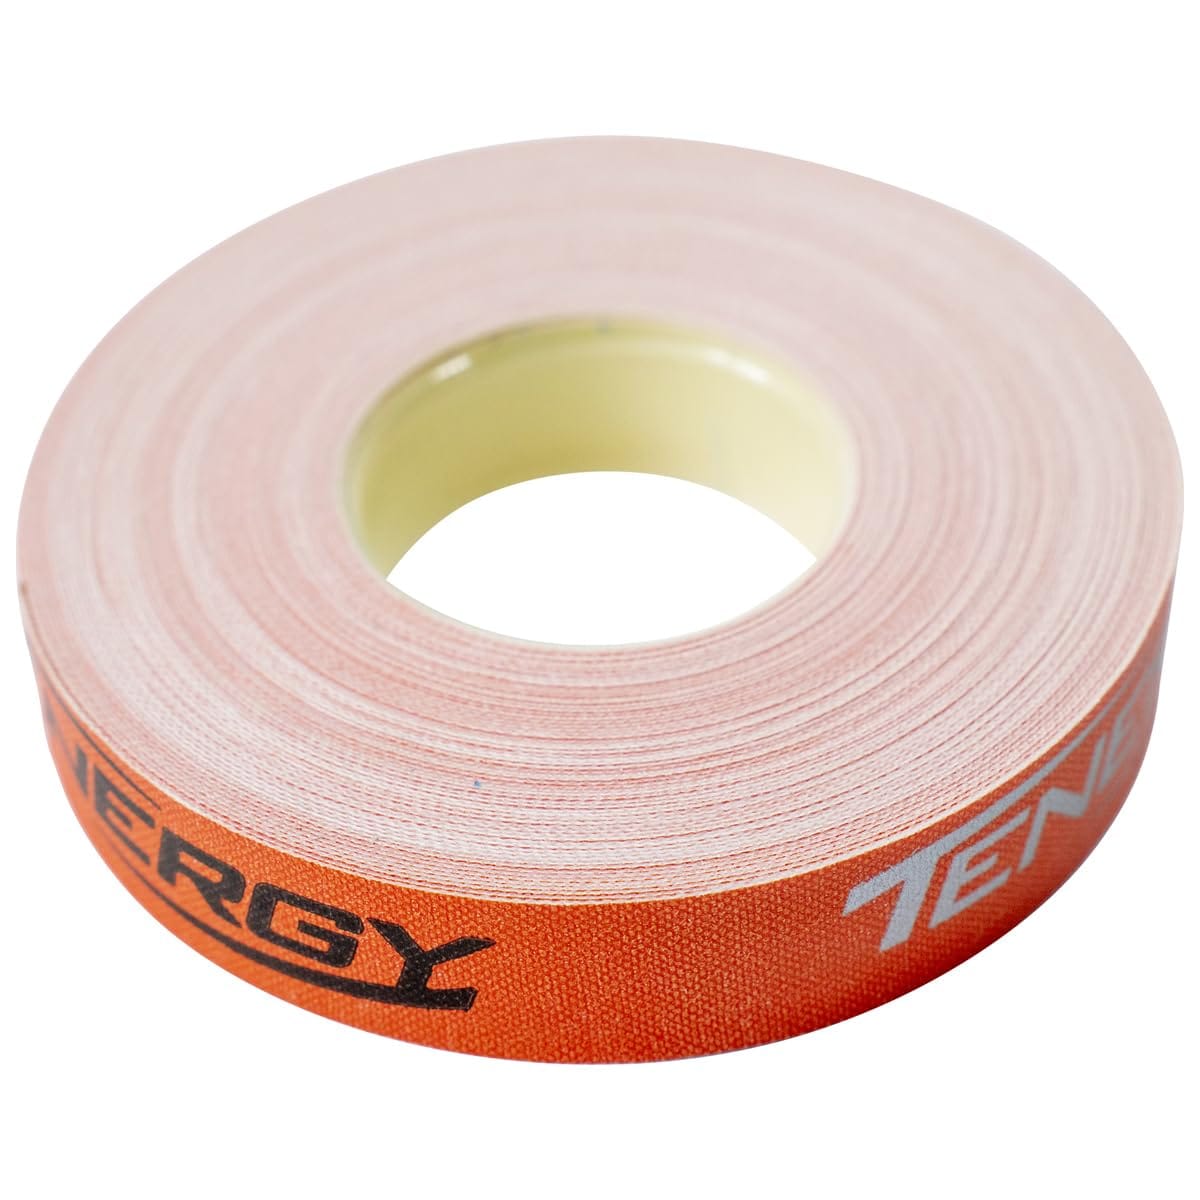 バタフライサイドテープ Tenergy Orange - 幅12mm - ラバーとブレードのエッジを保護するためのサイドテープ 卓球/ピンポンパドル用 - 10m (20ラック) と50m (100ラック)